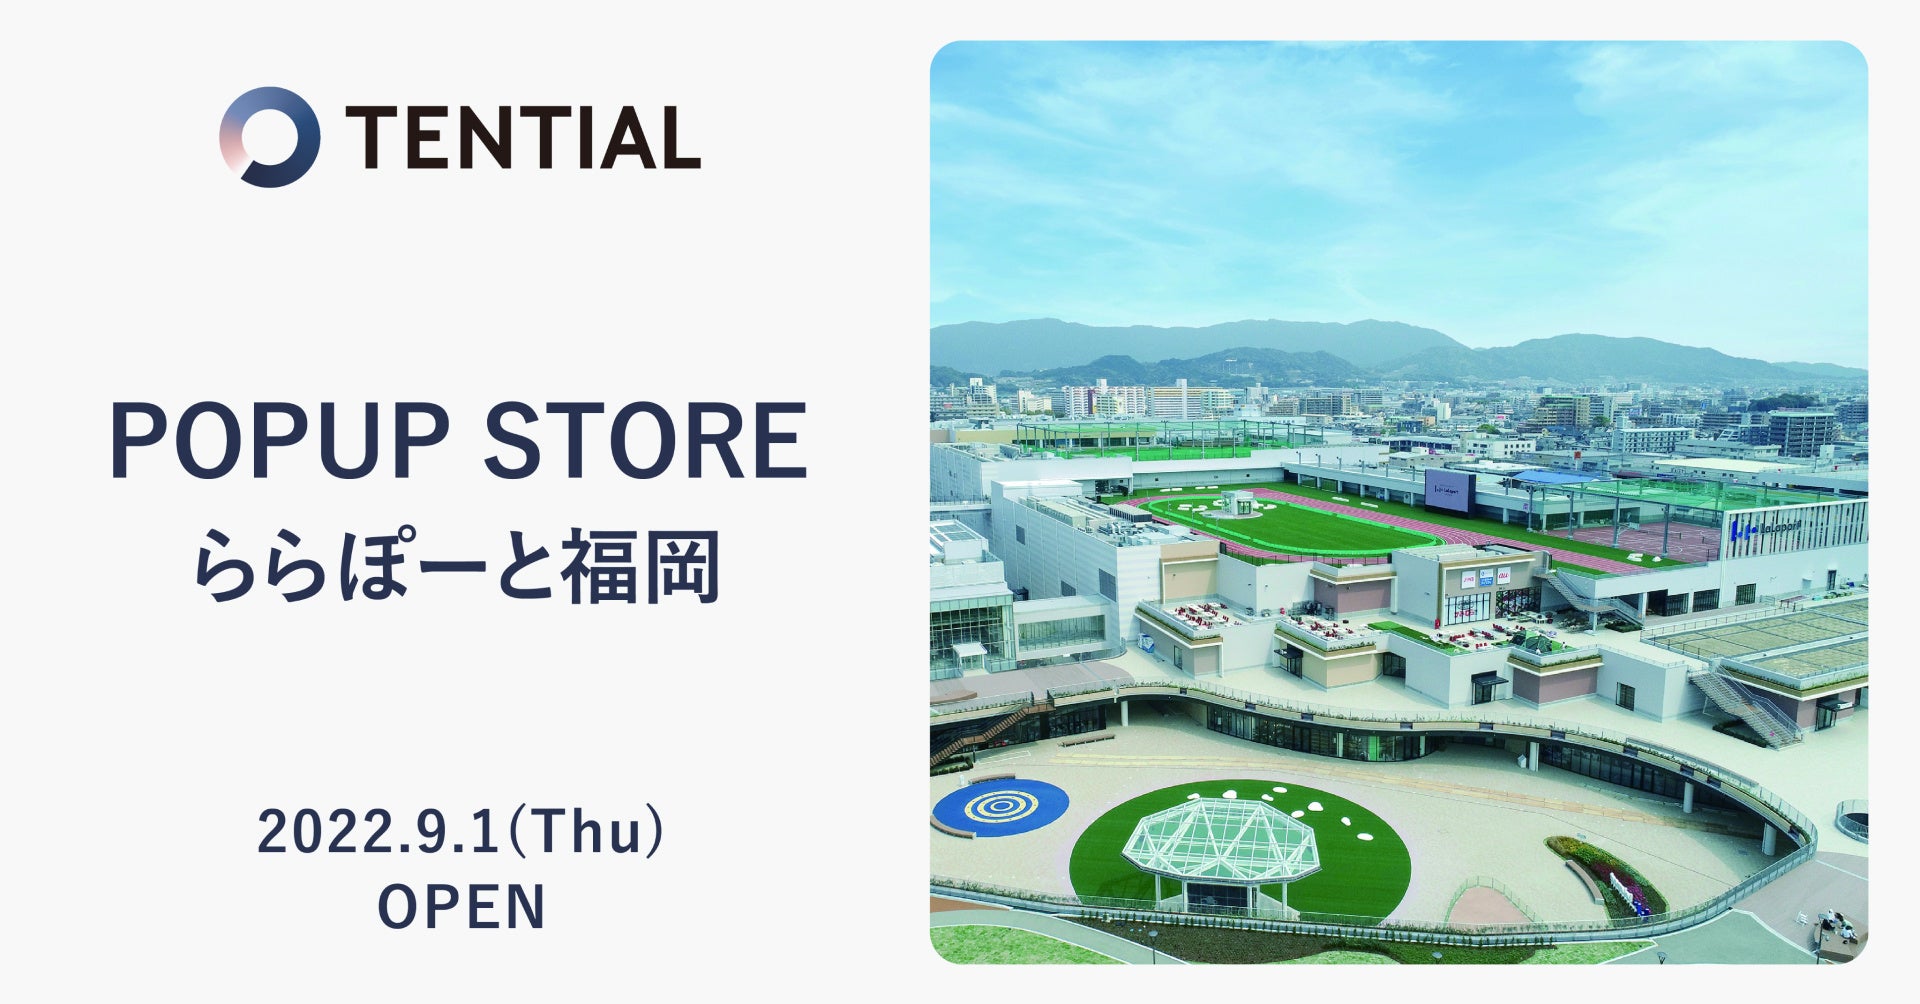 ウェルネスD2Cブランド TENTIALの全製品を販売する「TENTIAL POPUP STORE」を三井ショッピングパーク ららぽーと福岡にオープン